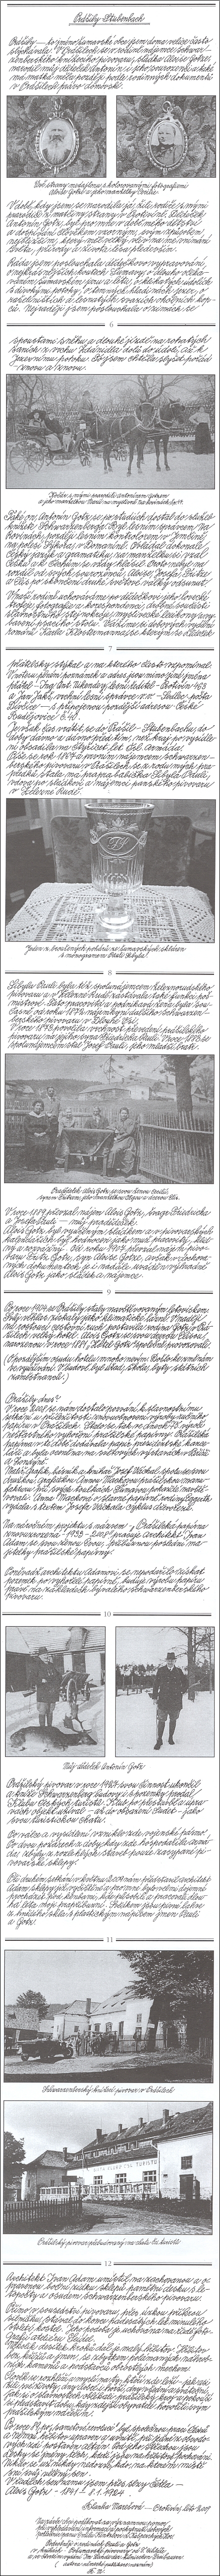 Text Blanky Marešové, psaný rukou jejího muže Štěpána M. Mareše, vyšel takto na stránkách "Obnovené tradice"